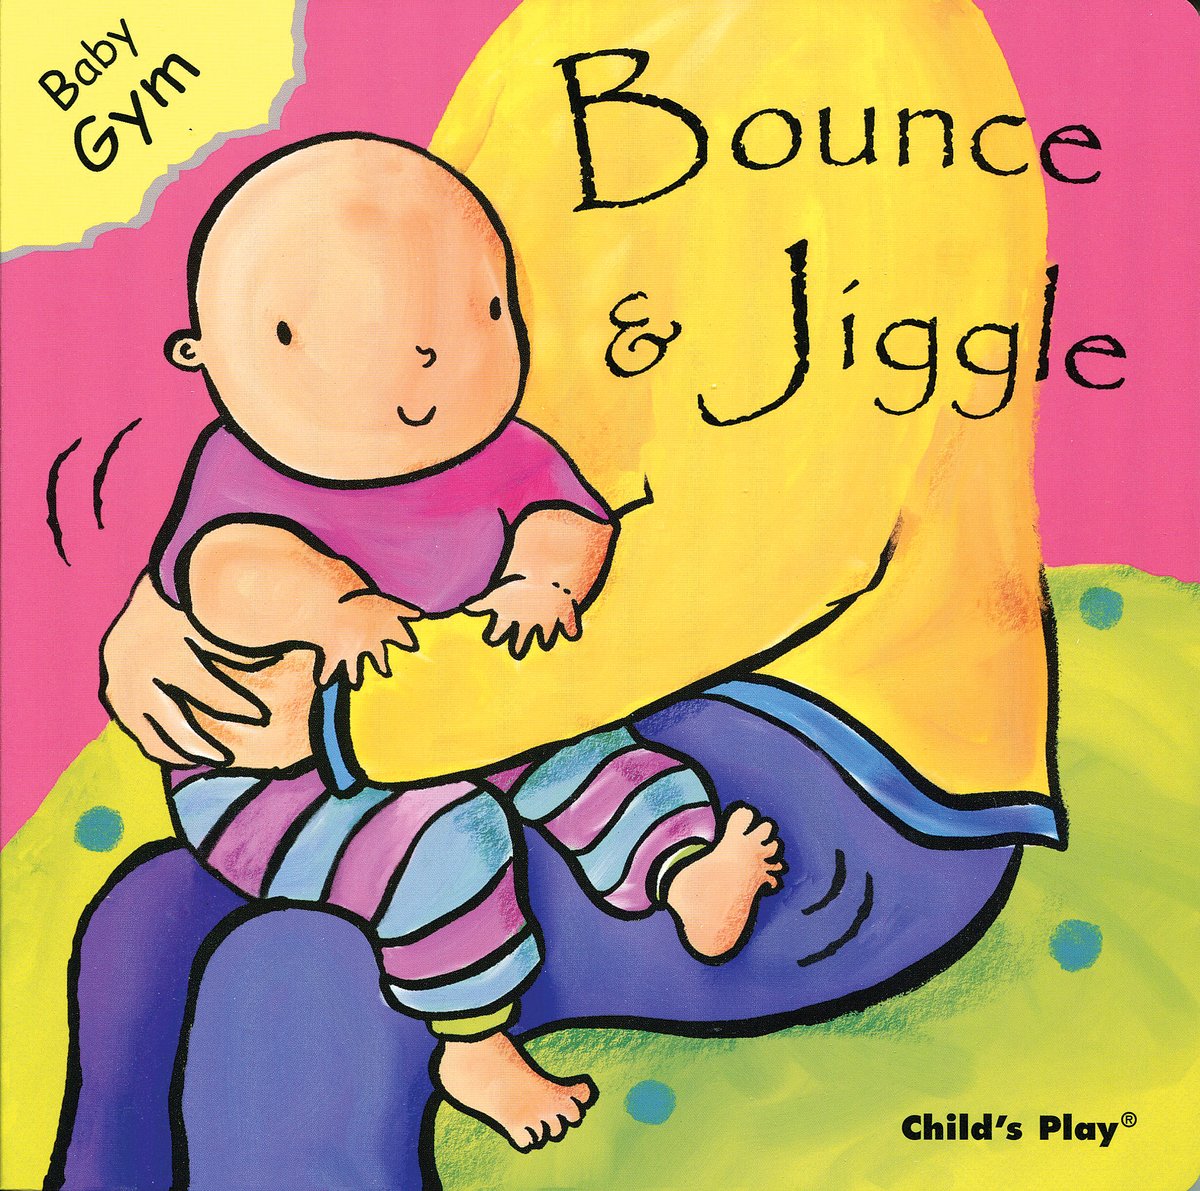 Bounce and Jiggle